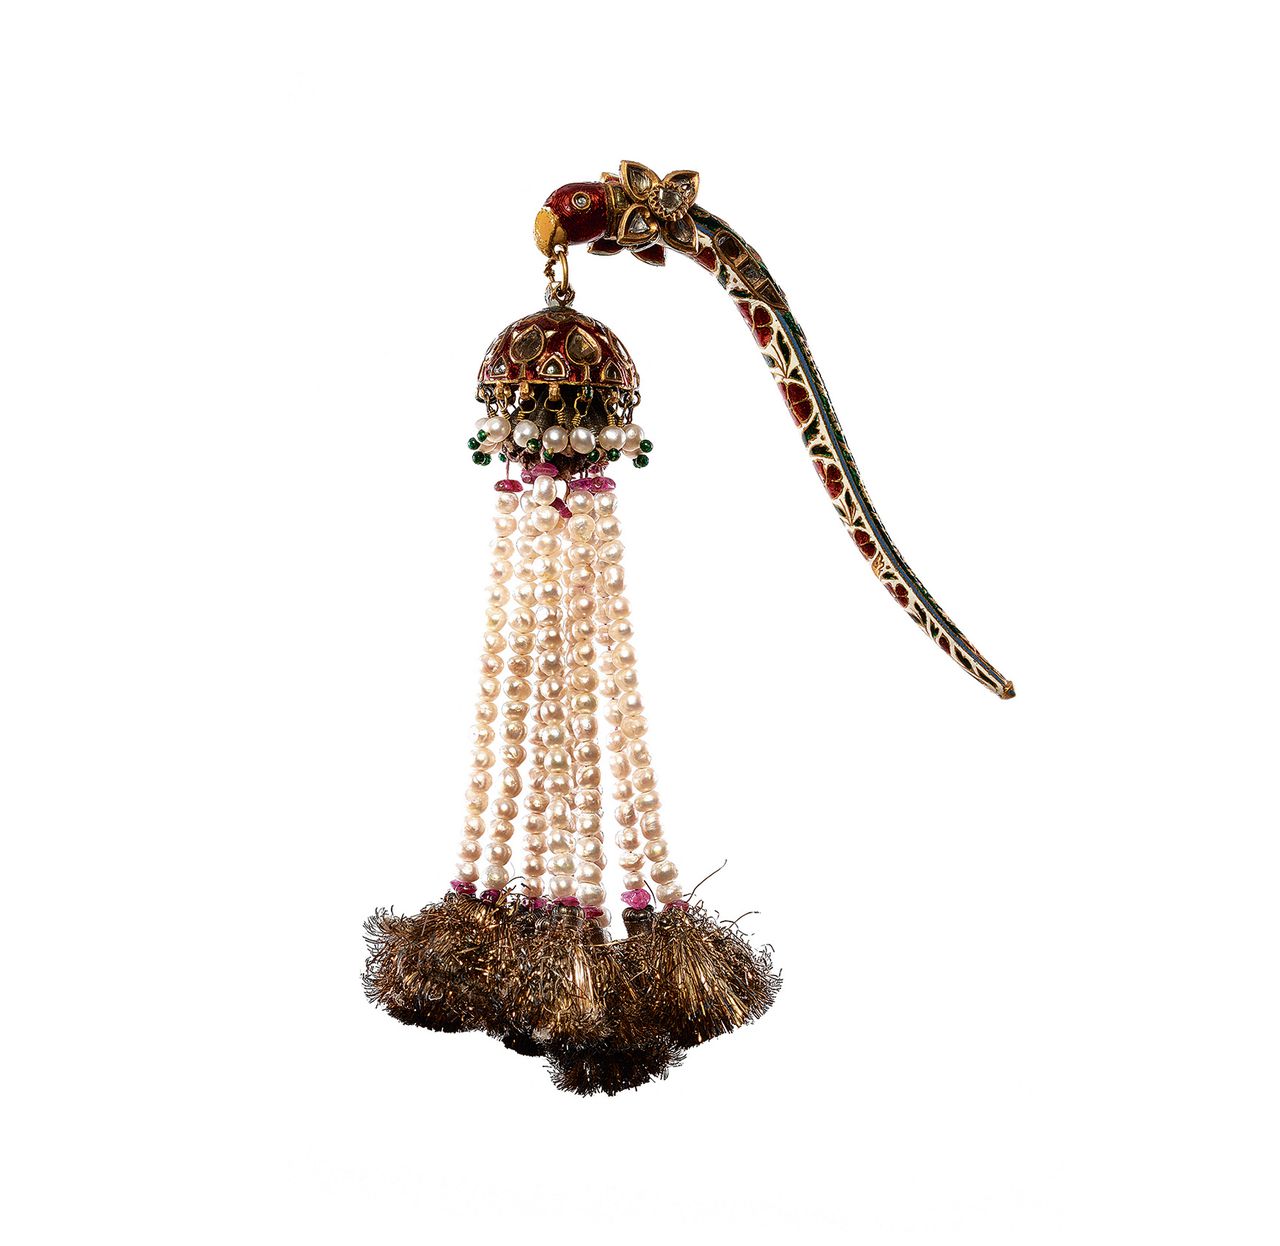 Negentiende-eeuws tulbandjuweel (een zogeheten turrah), uit Rajasthan, Jaipur. Gemaakt van goud, diamanten, robijnen, parels en email.